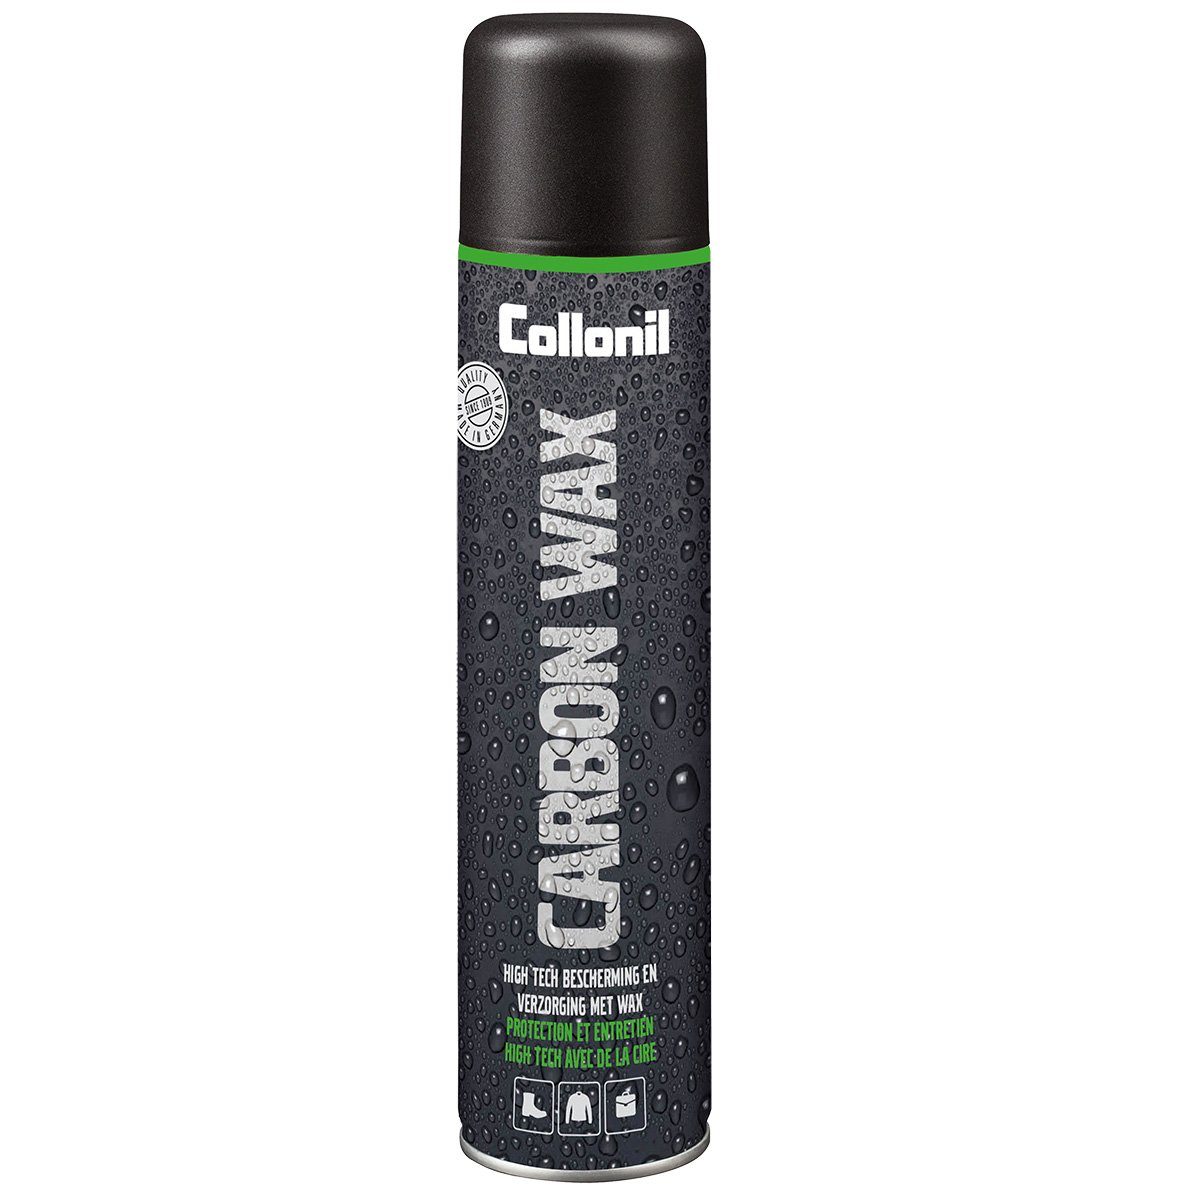 Collonil Carbon Wax - HighTech-Pflege und Schutz Schuh-Imprägnierspray